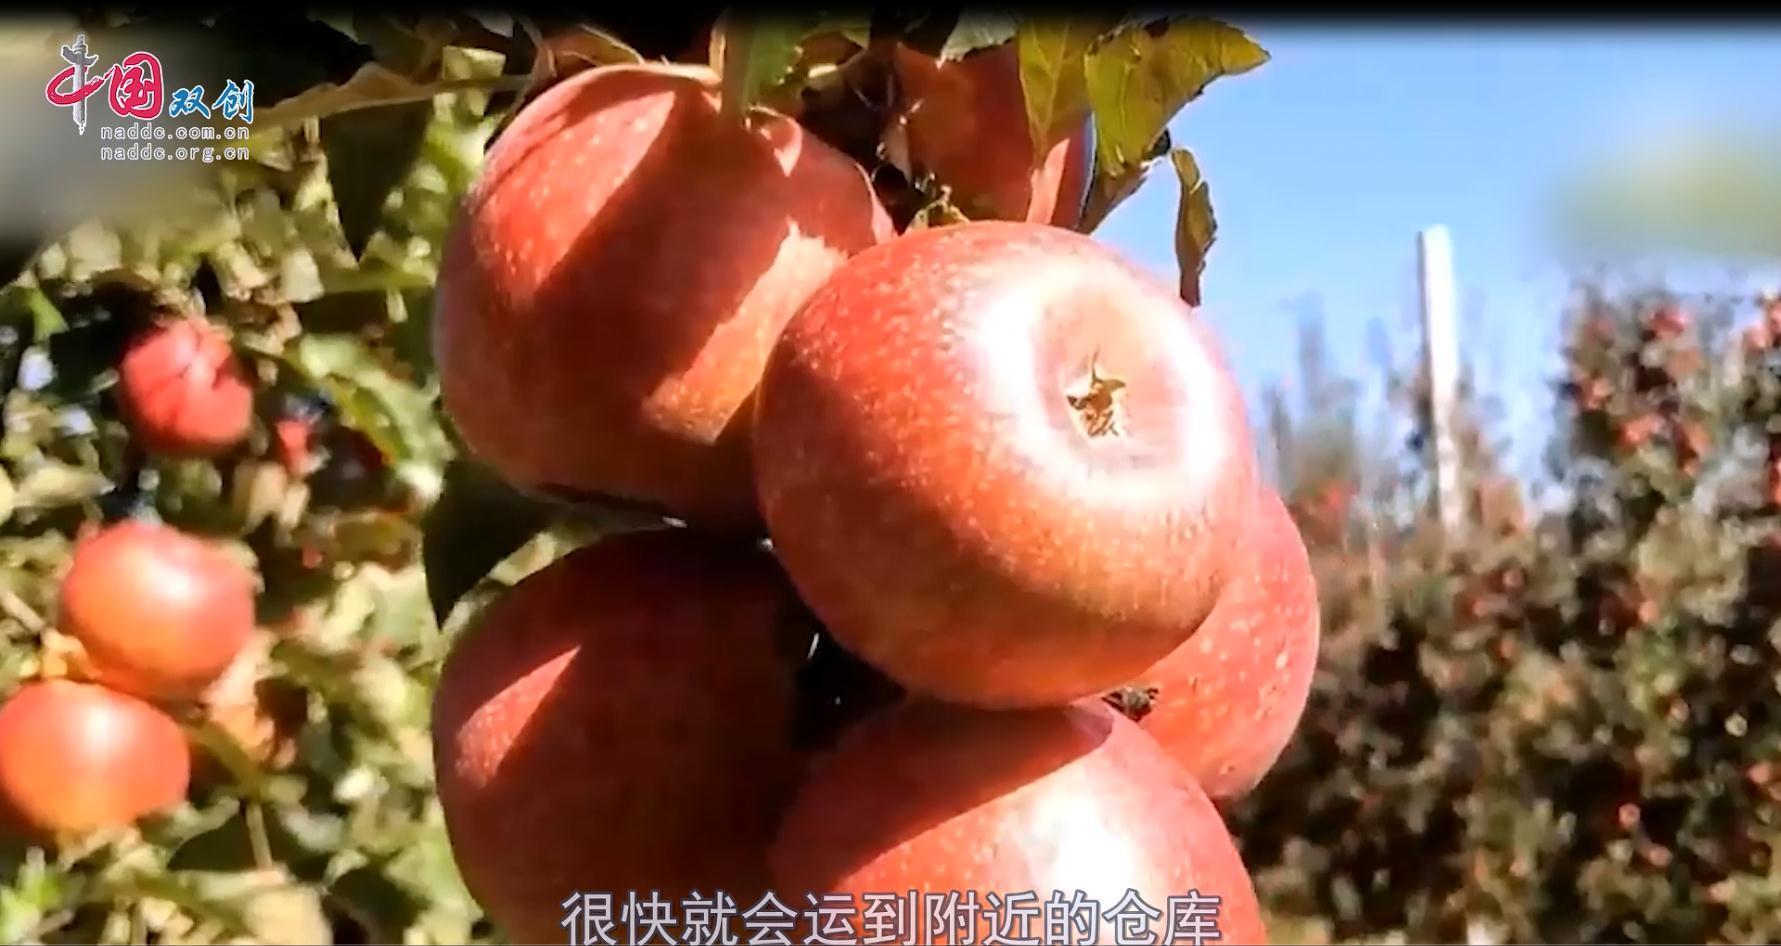 20221028第13期《创享生活惠丨品质提高销量好 贵州威宁红苹果成为村民增收“致富果”》